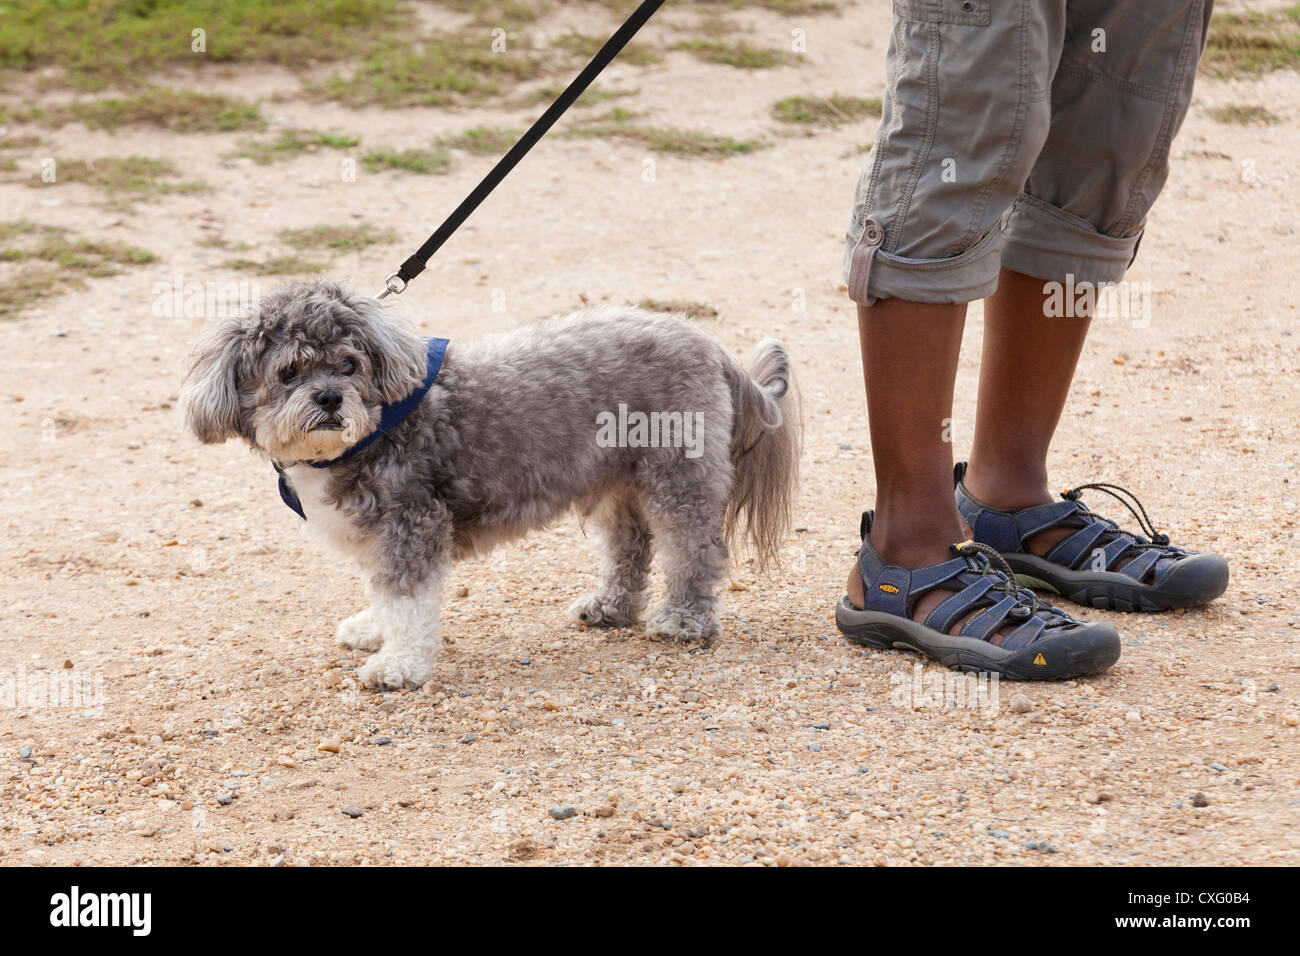 Small dog on leash - USA Stock Photo